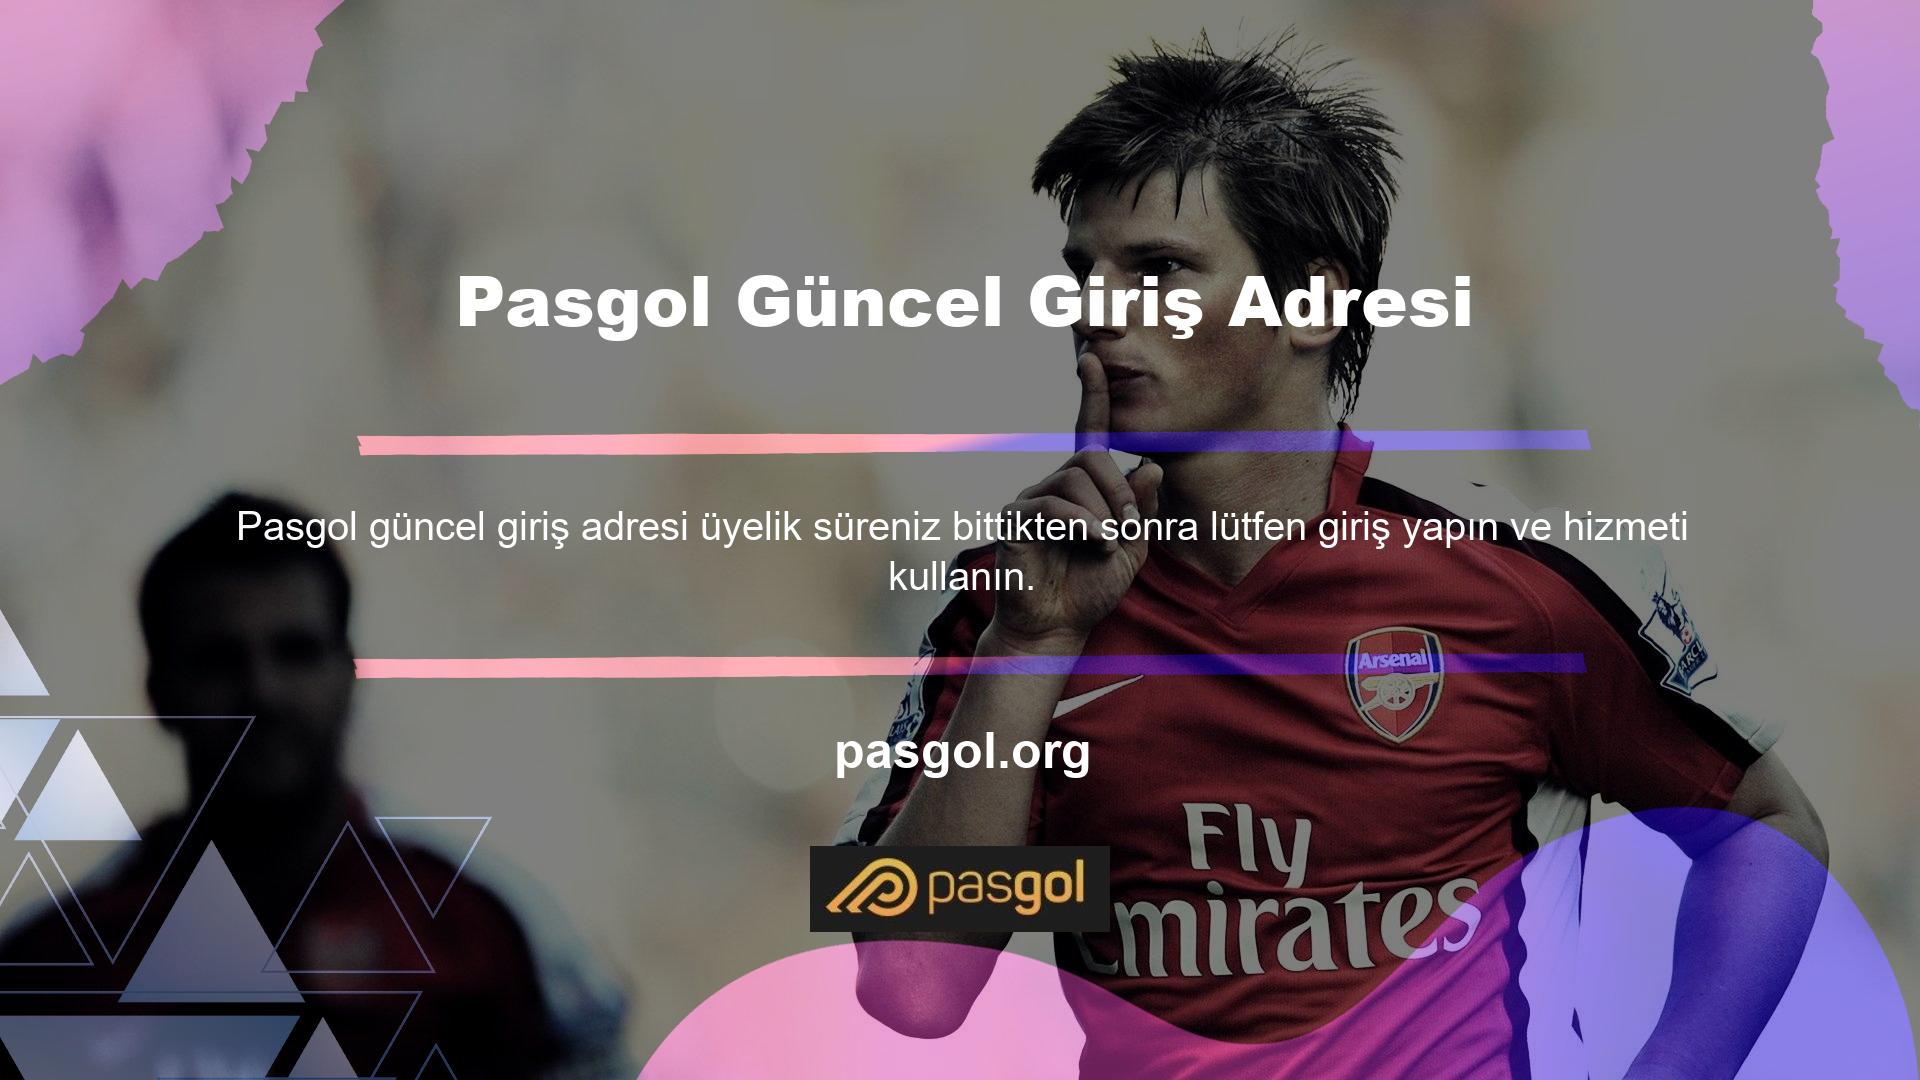 Kayıt olmak için öncelikle Pasgol ana sayfasında üyelik işlemini tamamlamalı ve site onayını beklemelisiniz